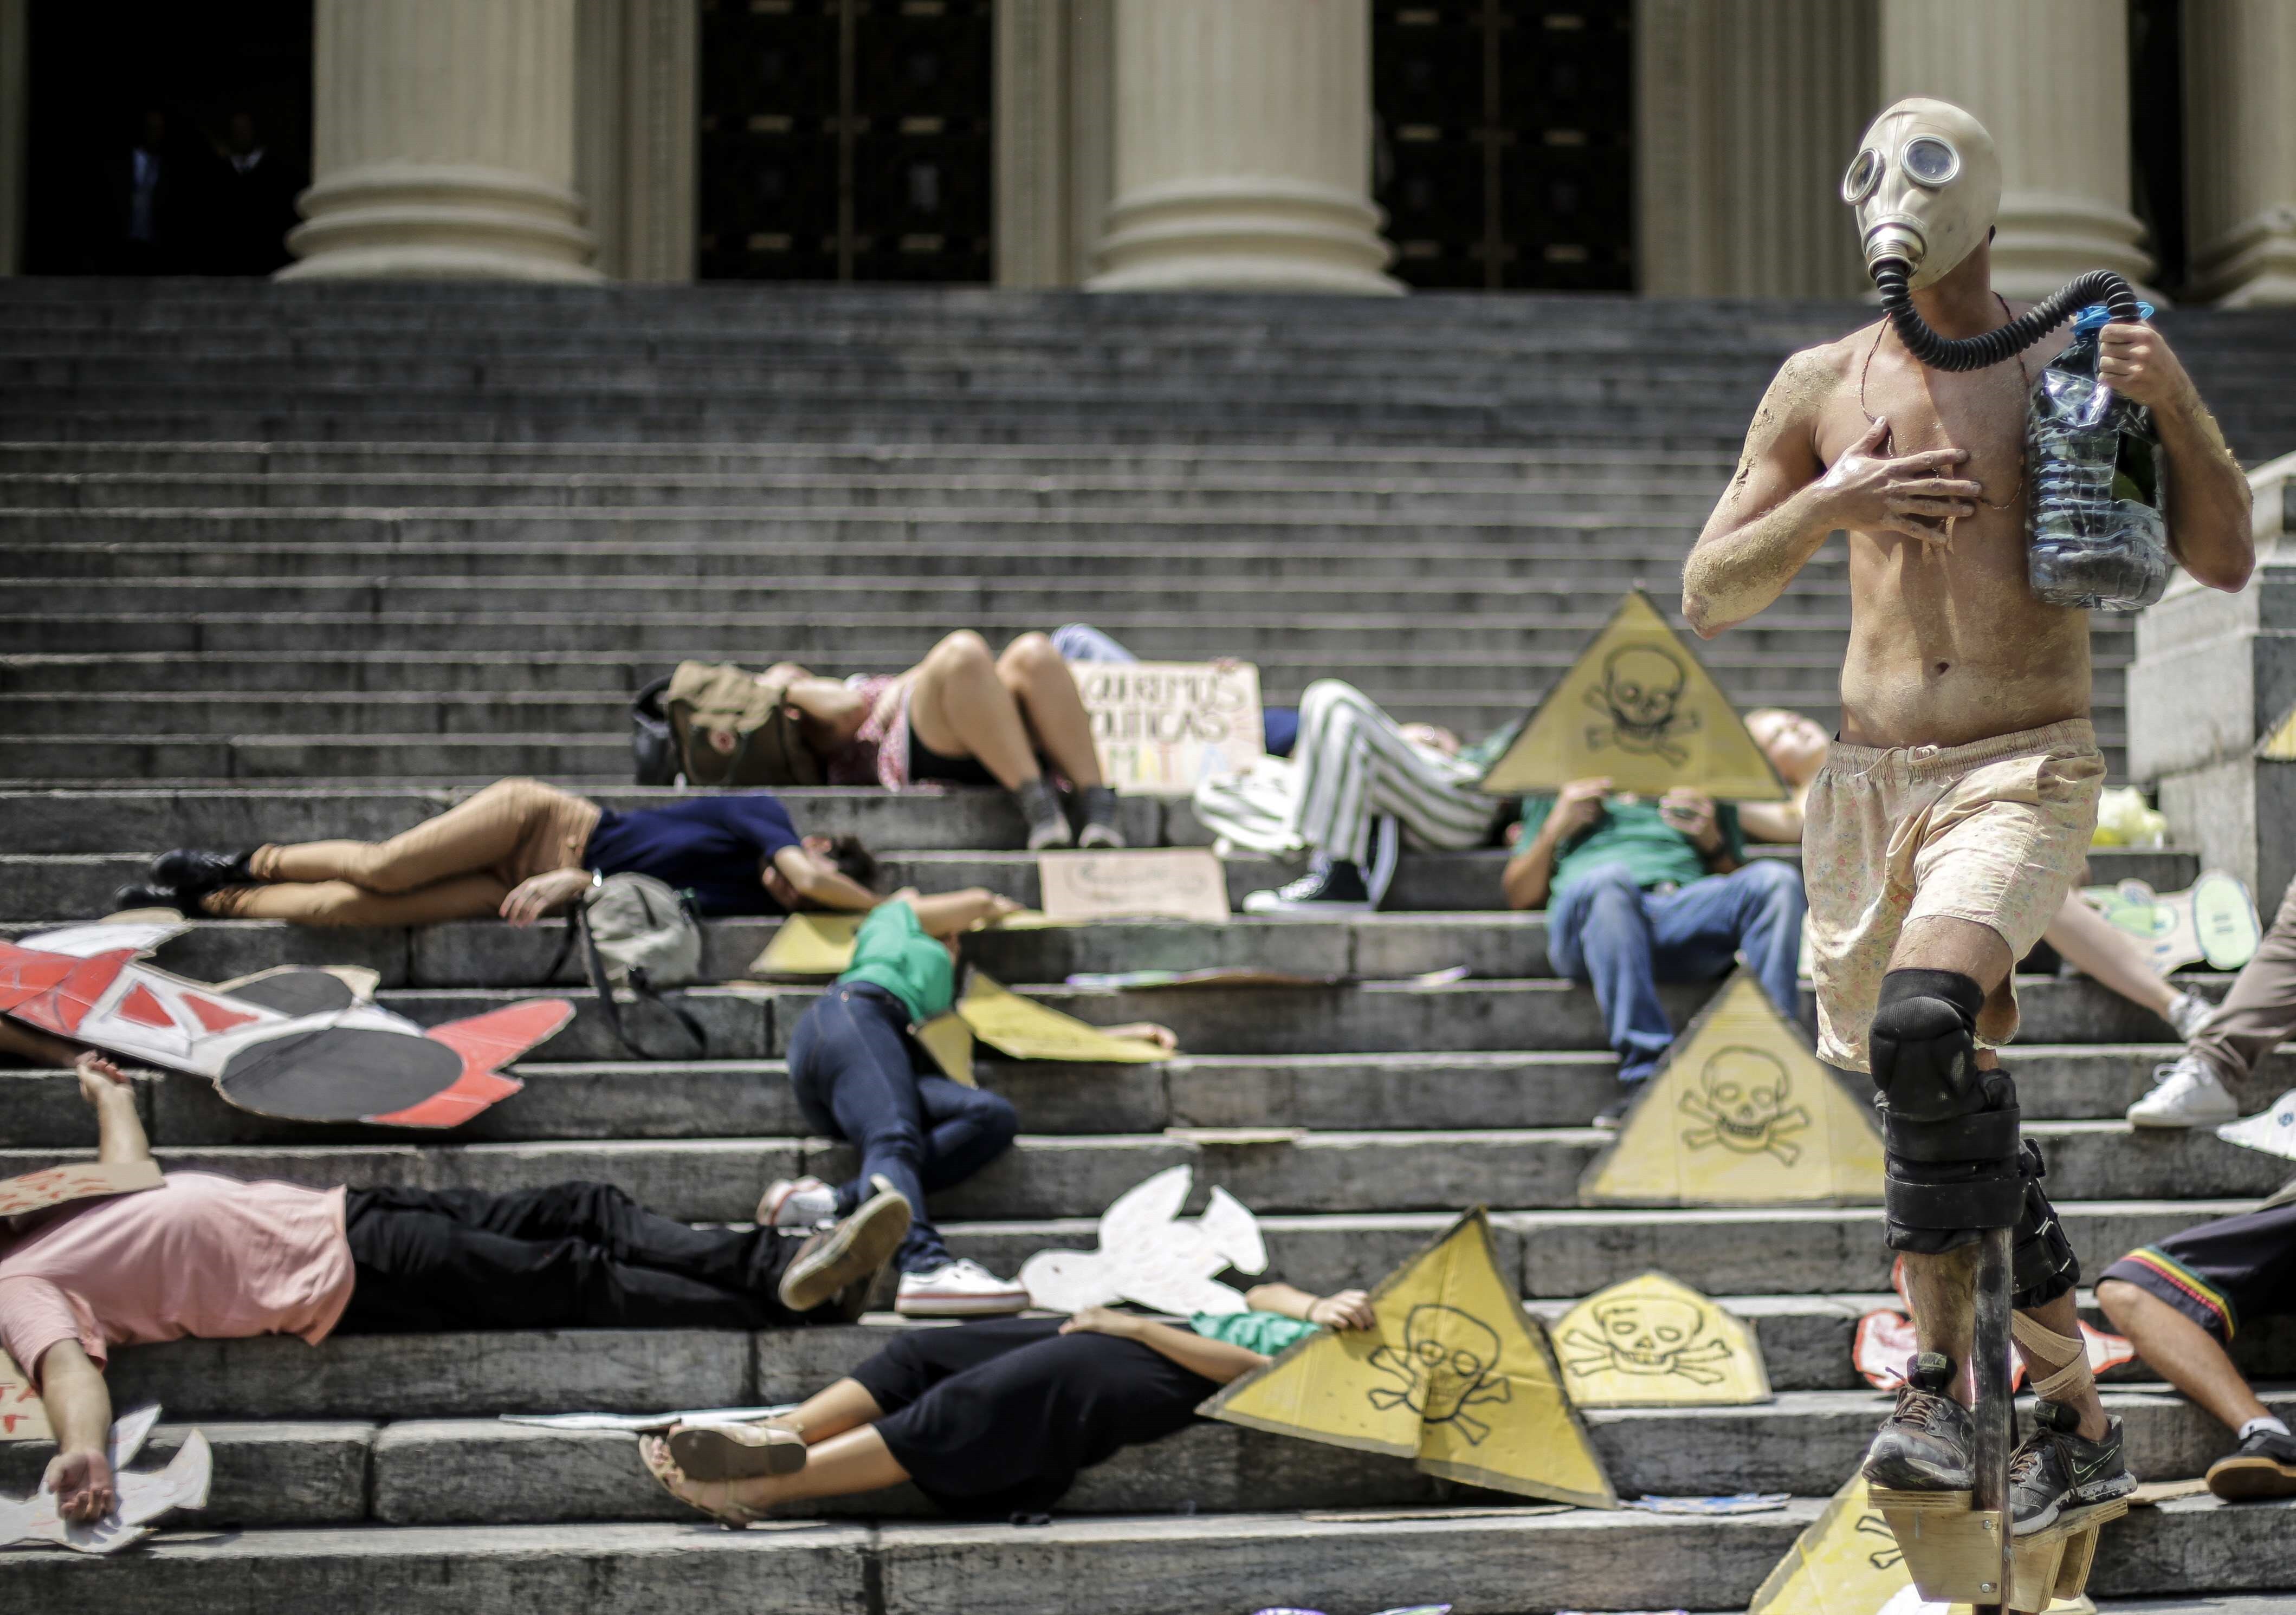 Activistas ambientales en una protesta contra la crisis climática en las calles de Río de Janeiro (EFE)
